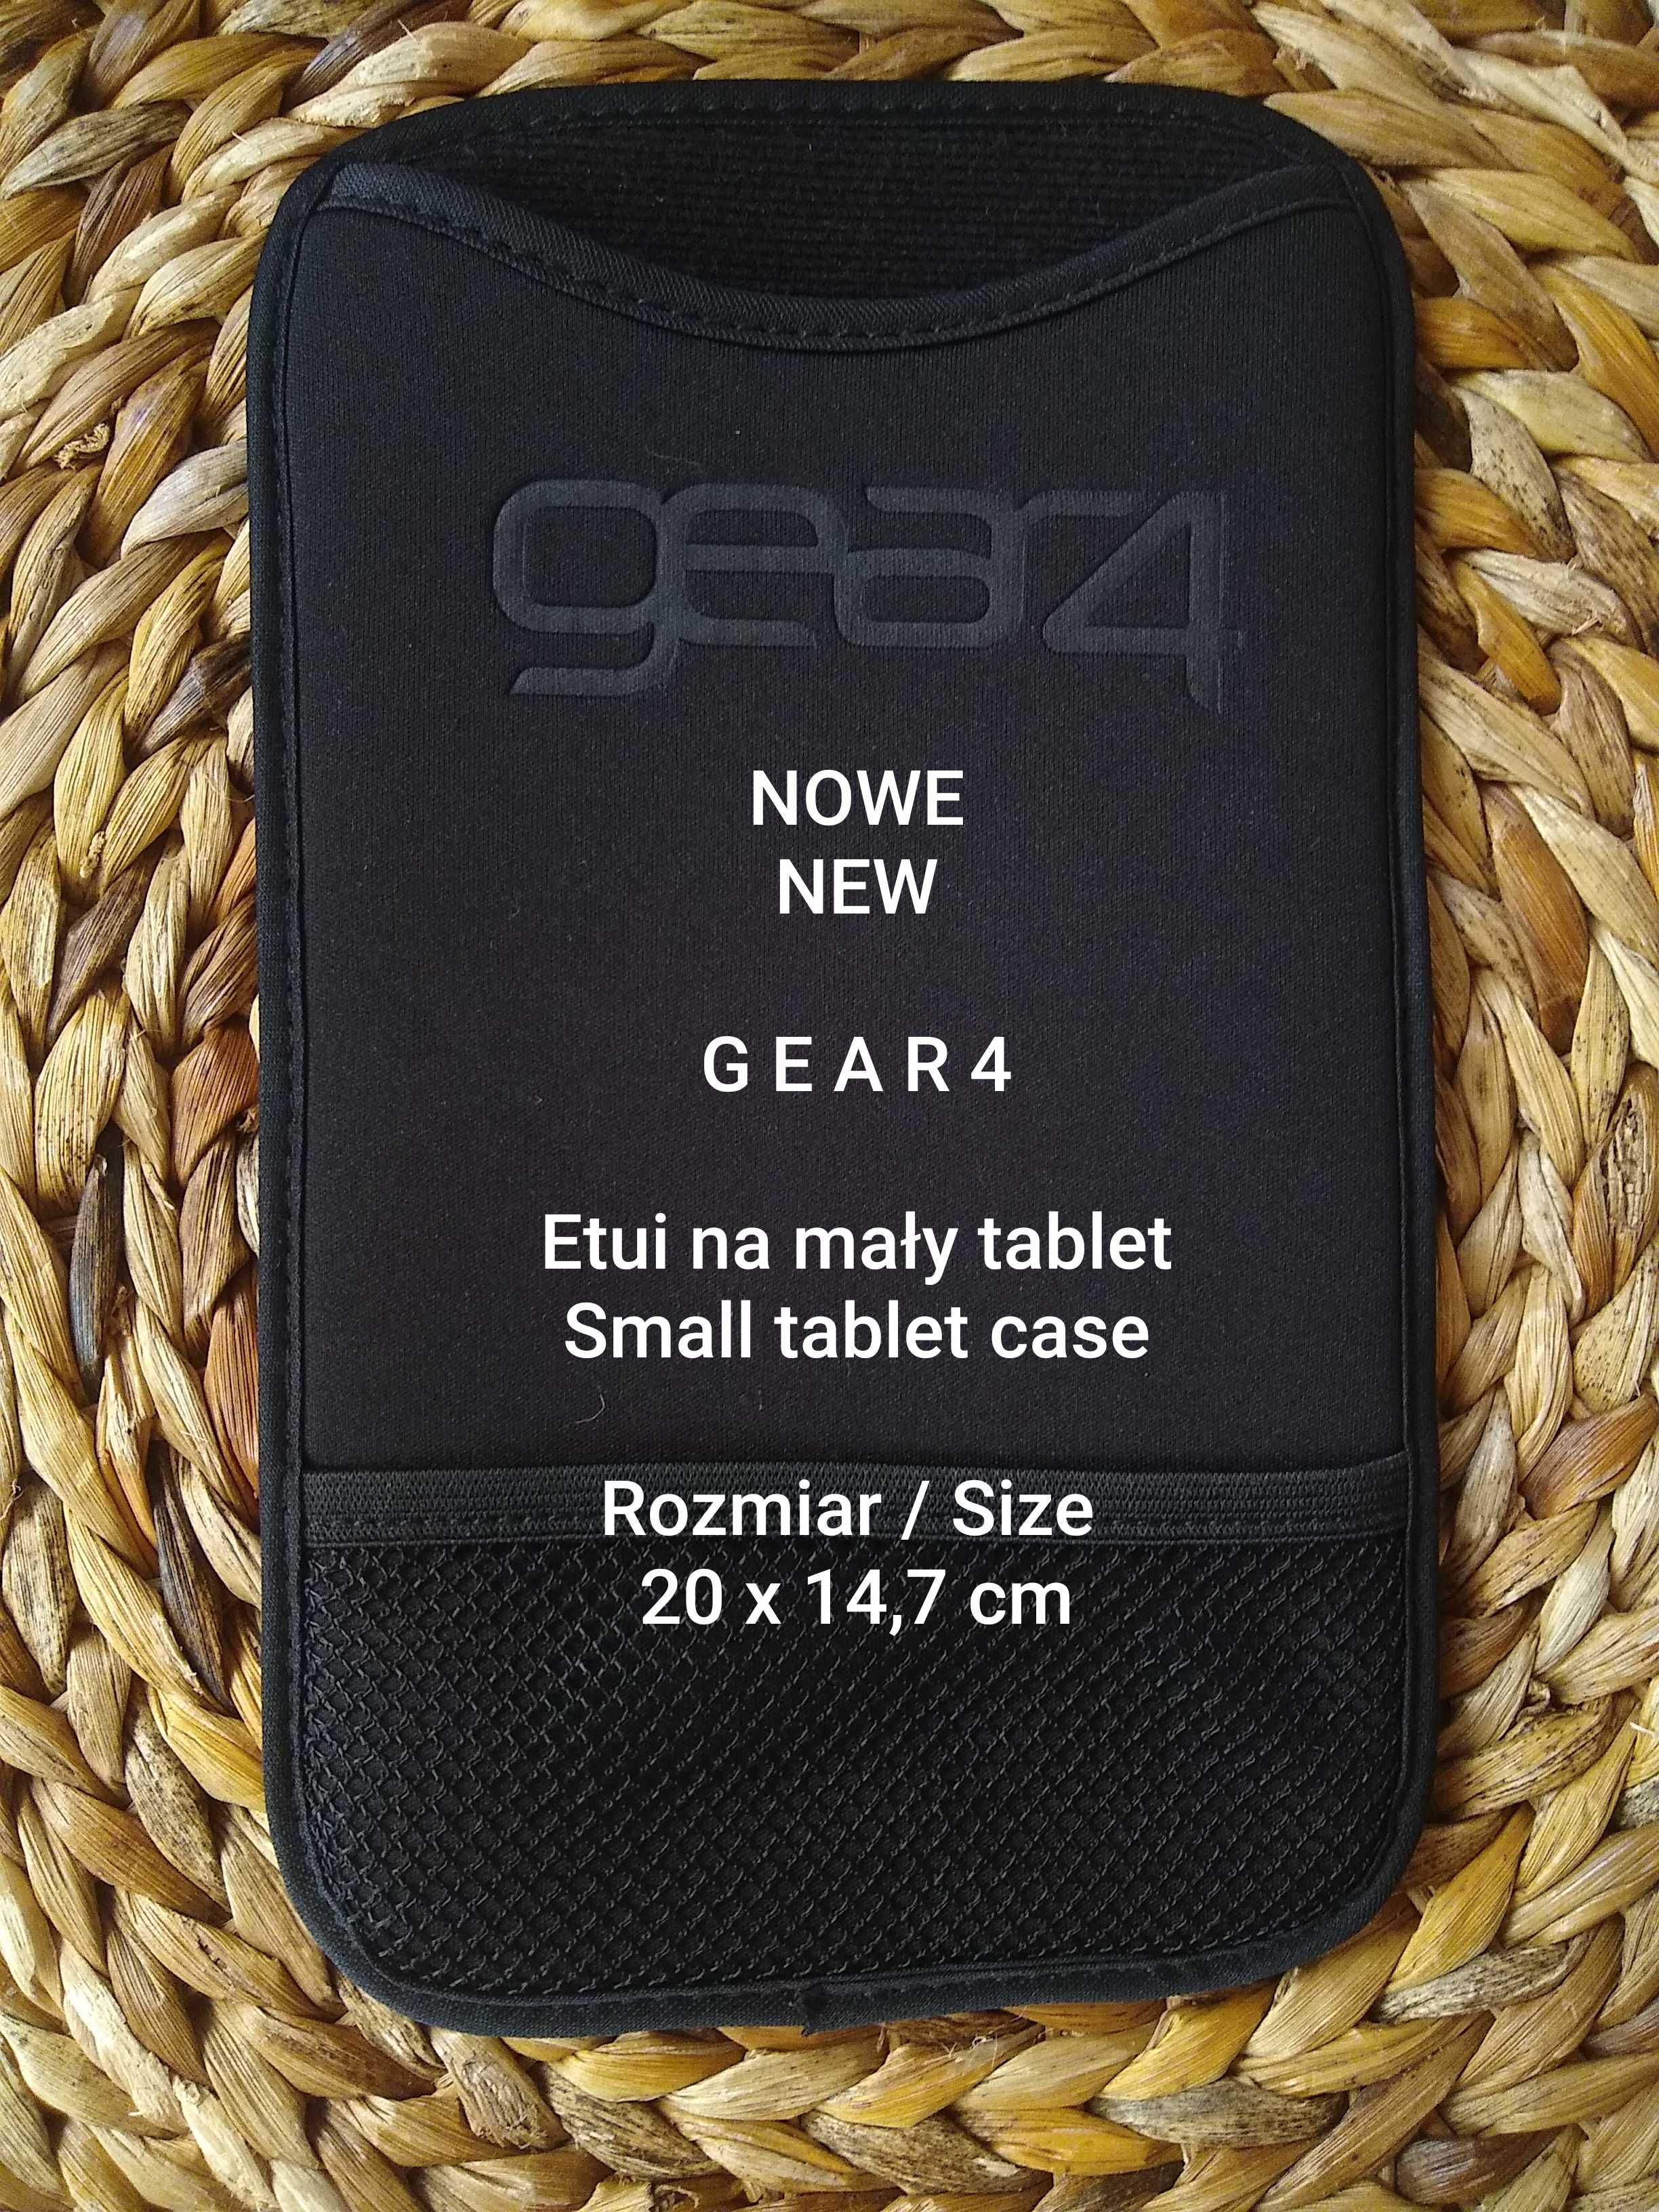 GEAR4  Nowe etui na mały tablet, 20 x 14,7 cm